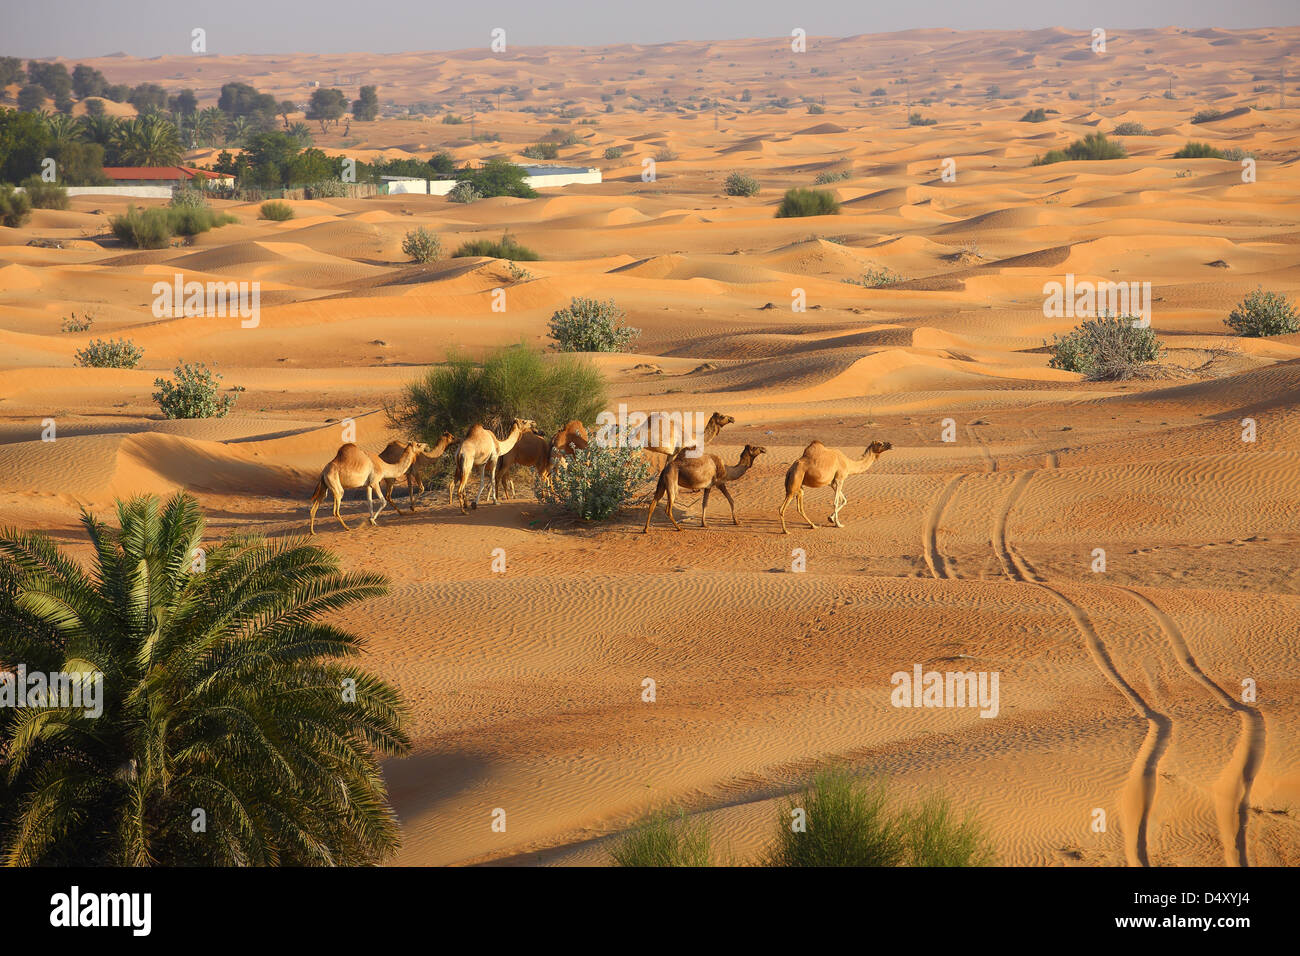 Kamele in der arabischen Wüste, Dubai, Vereinigte Arabische Emirate Stockfoto